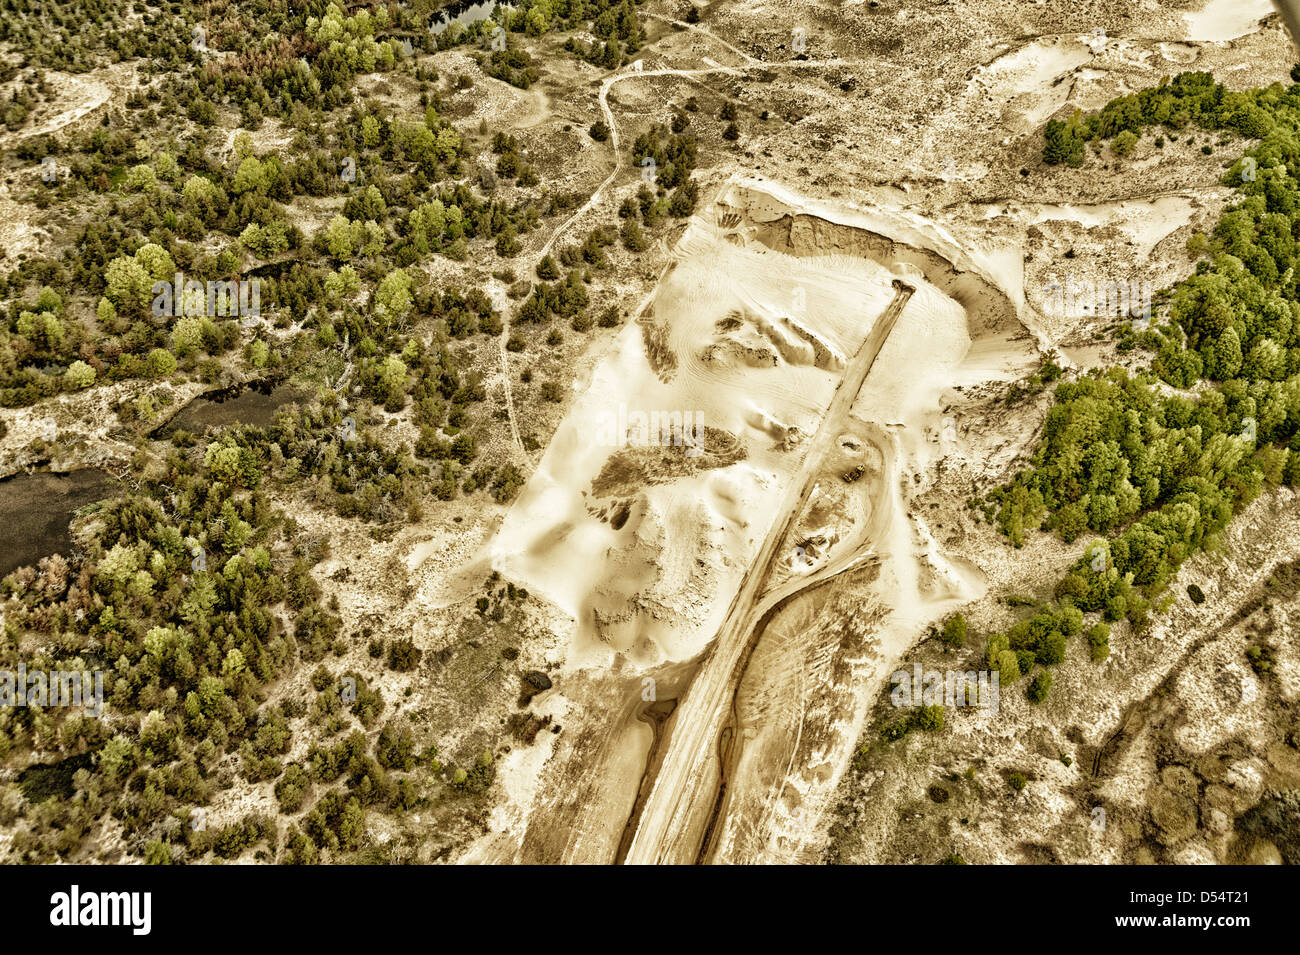 Vista aerea di sabbia operazione mineraria adiacente al Ludington Dunes State Park vicino Ludington, Michigan, Stati Uniti d'America. Fotografia di Jeffrey Wickett, NorthLight Foto Stock